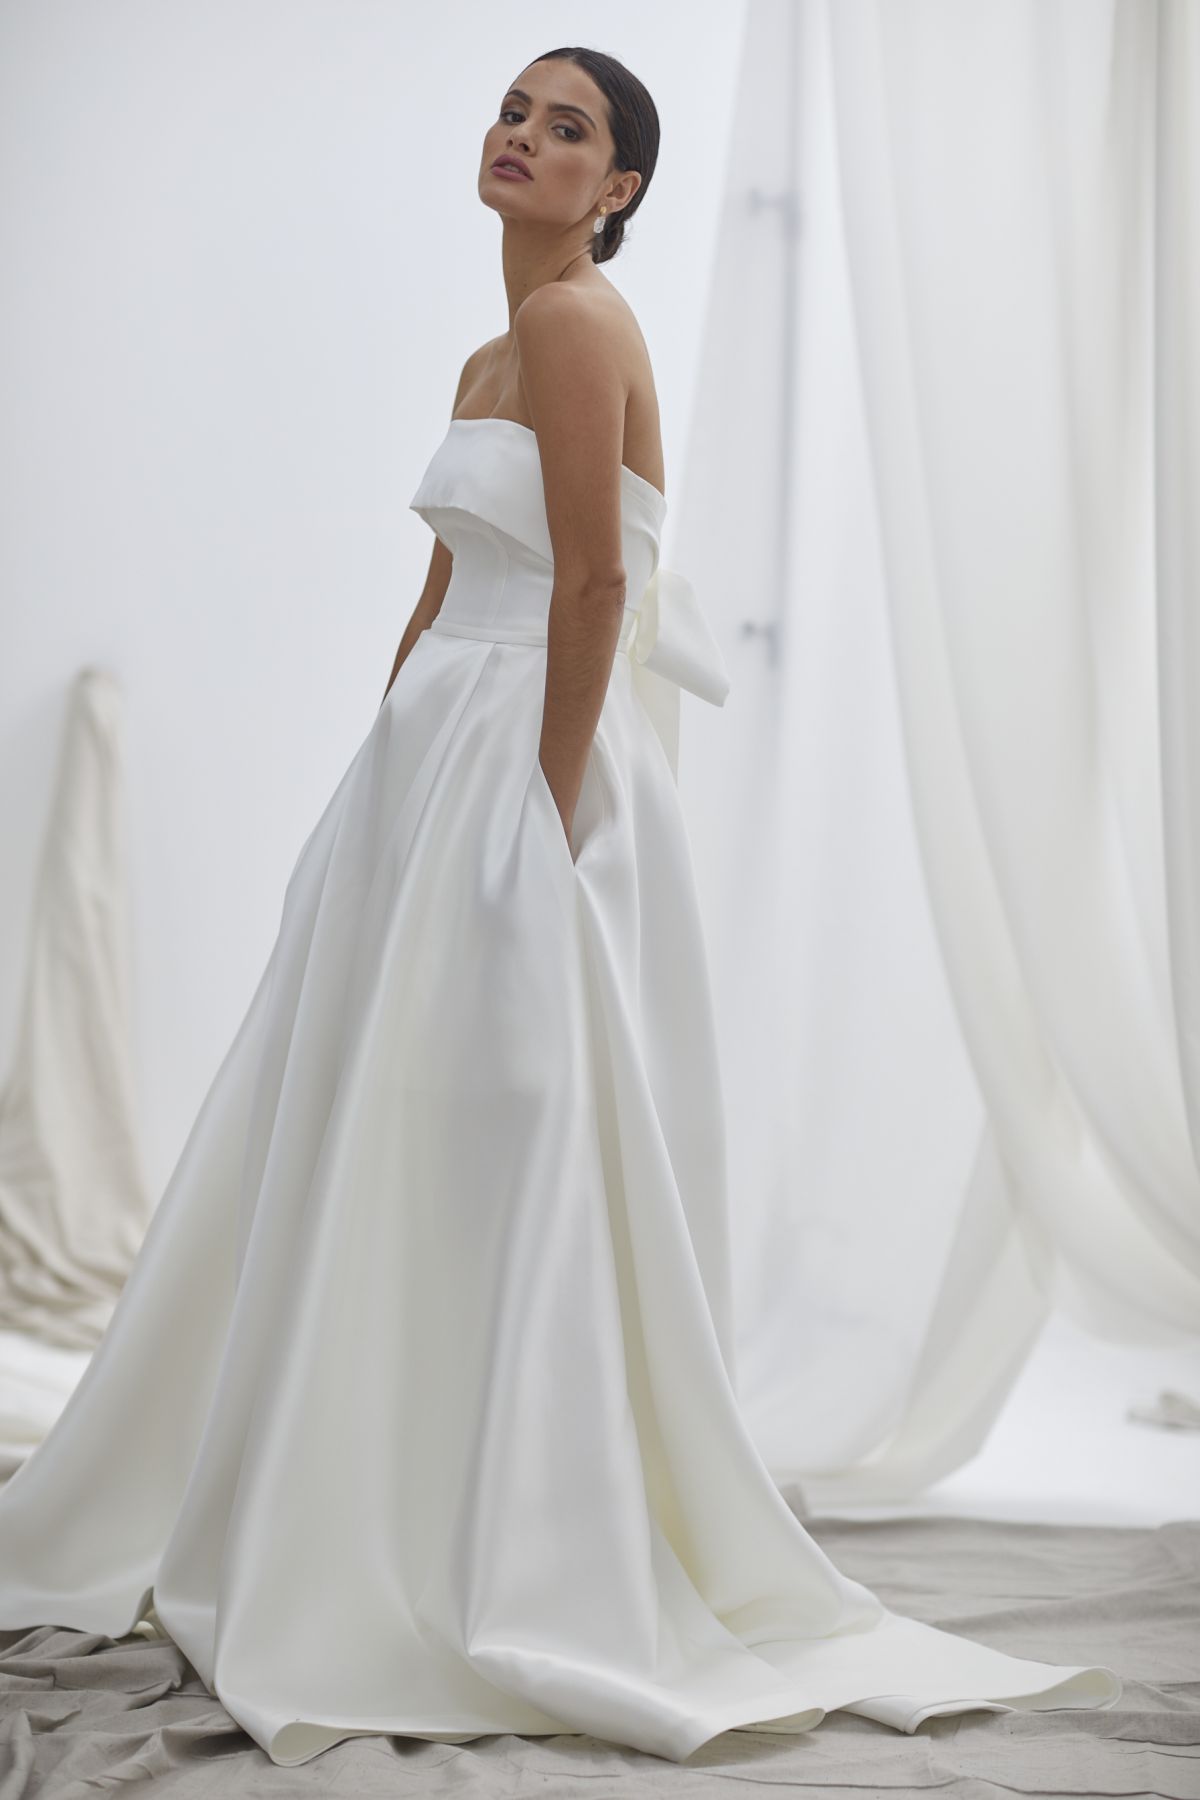 Vivienne by Hera Couture Designer wedding gown Mikado satin wedding dress strapless ball gown